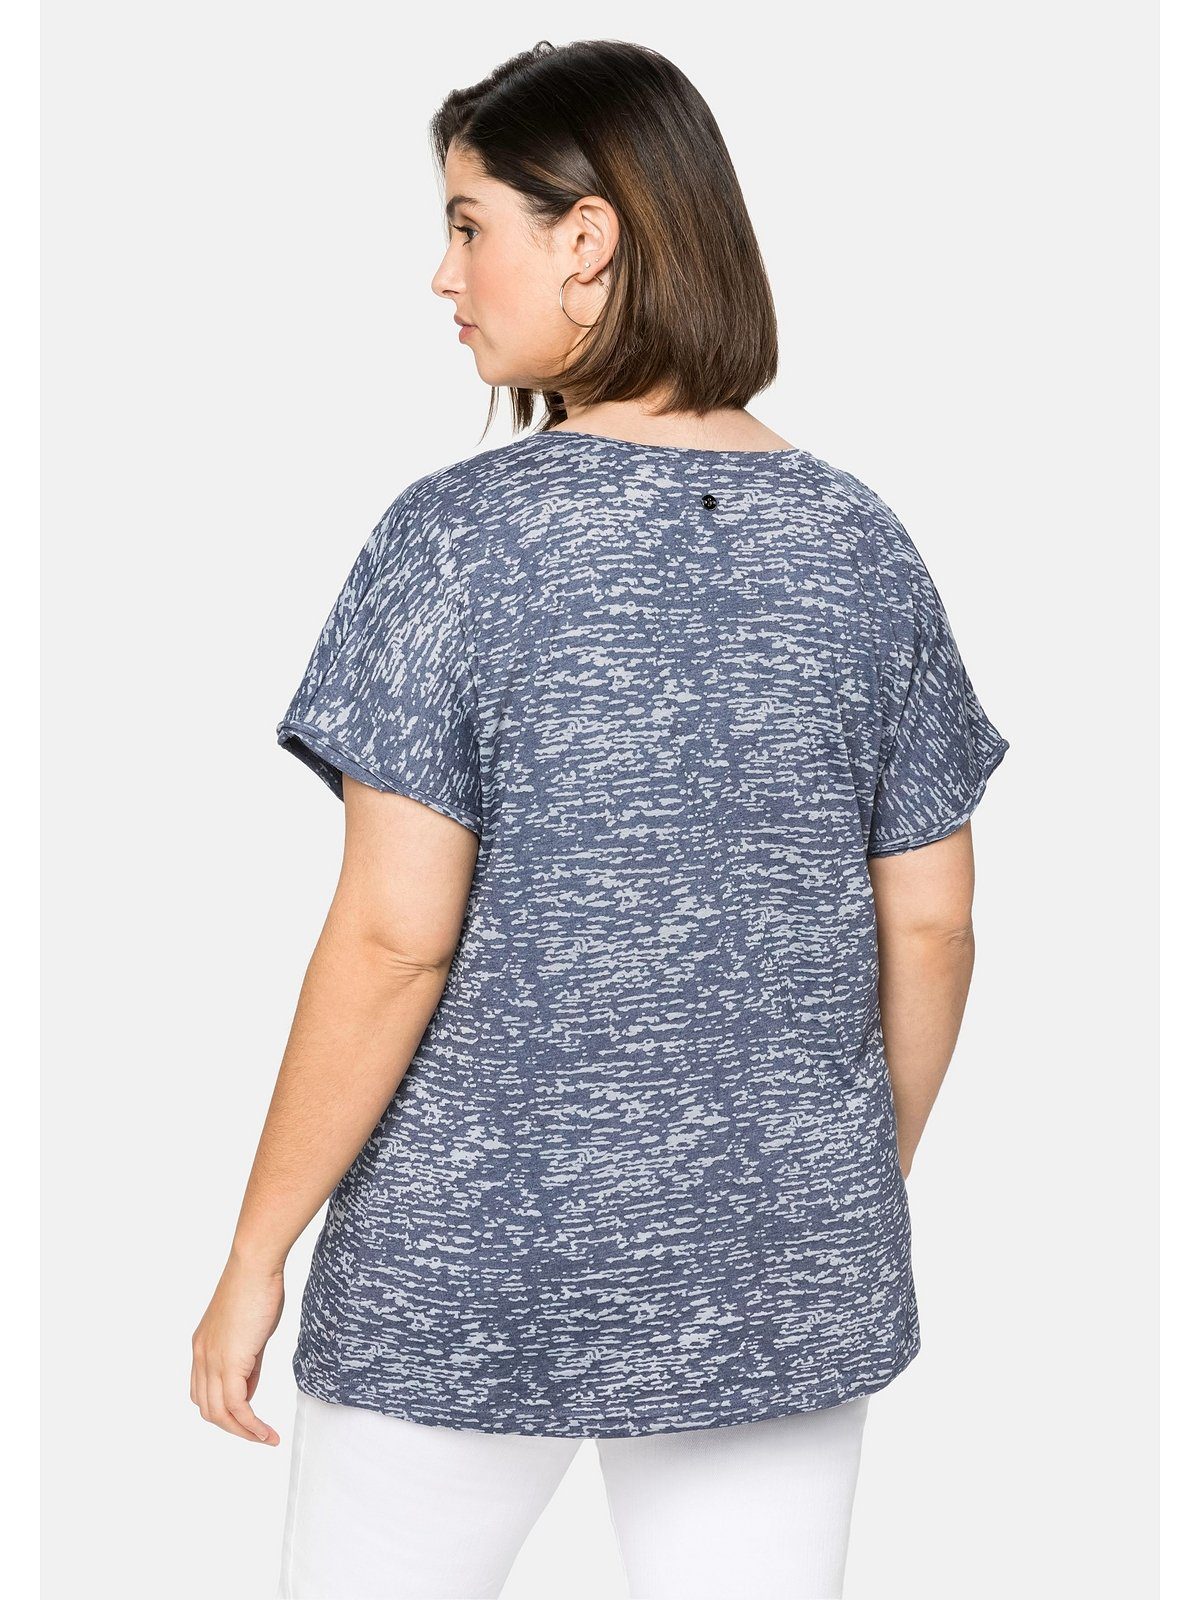 mit Große Größen transparent leicht T-Shirt Ausbrennermuster, Sheego marine